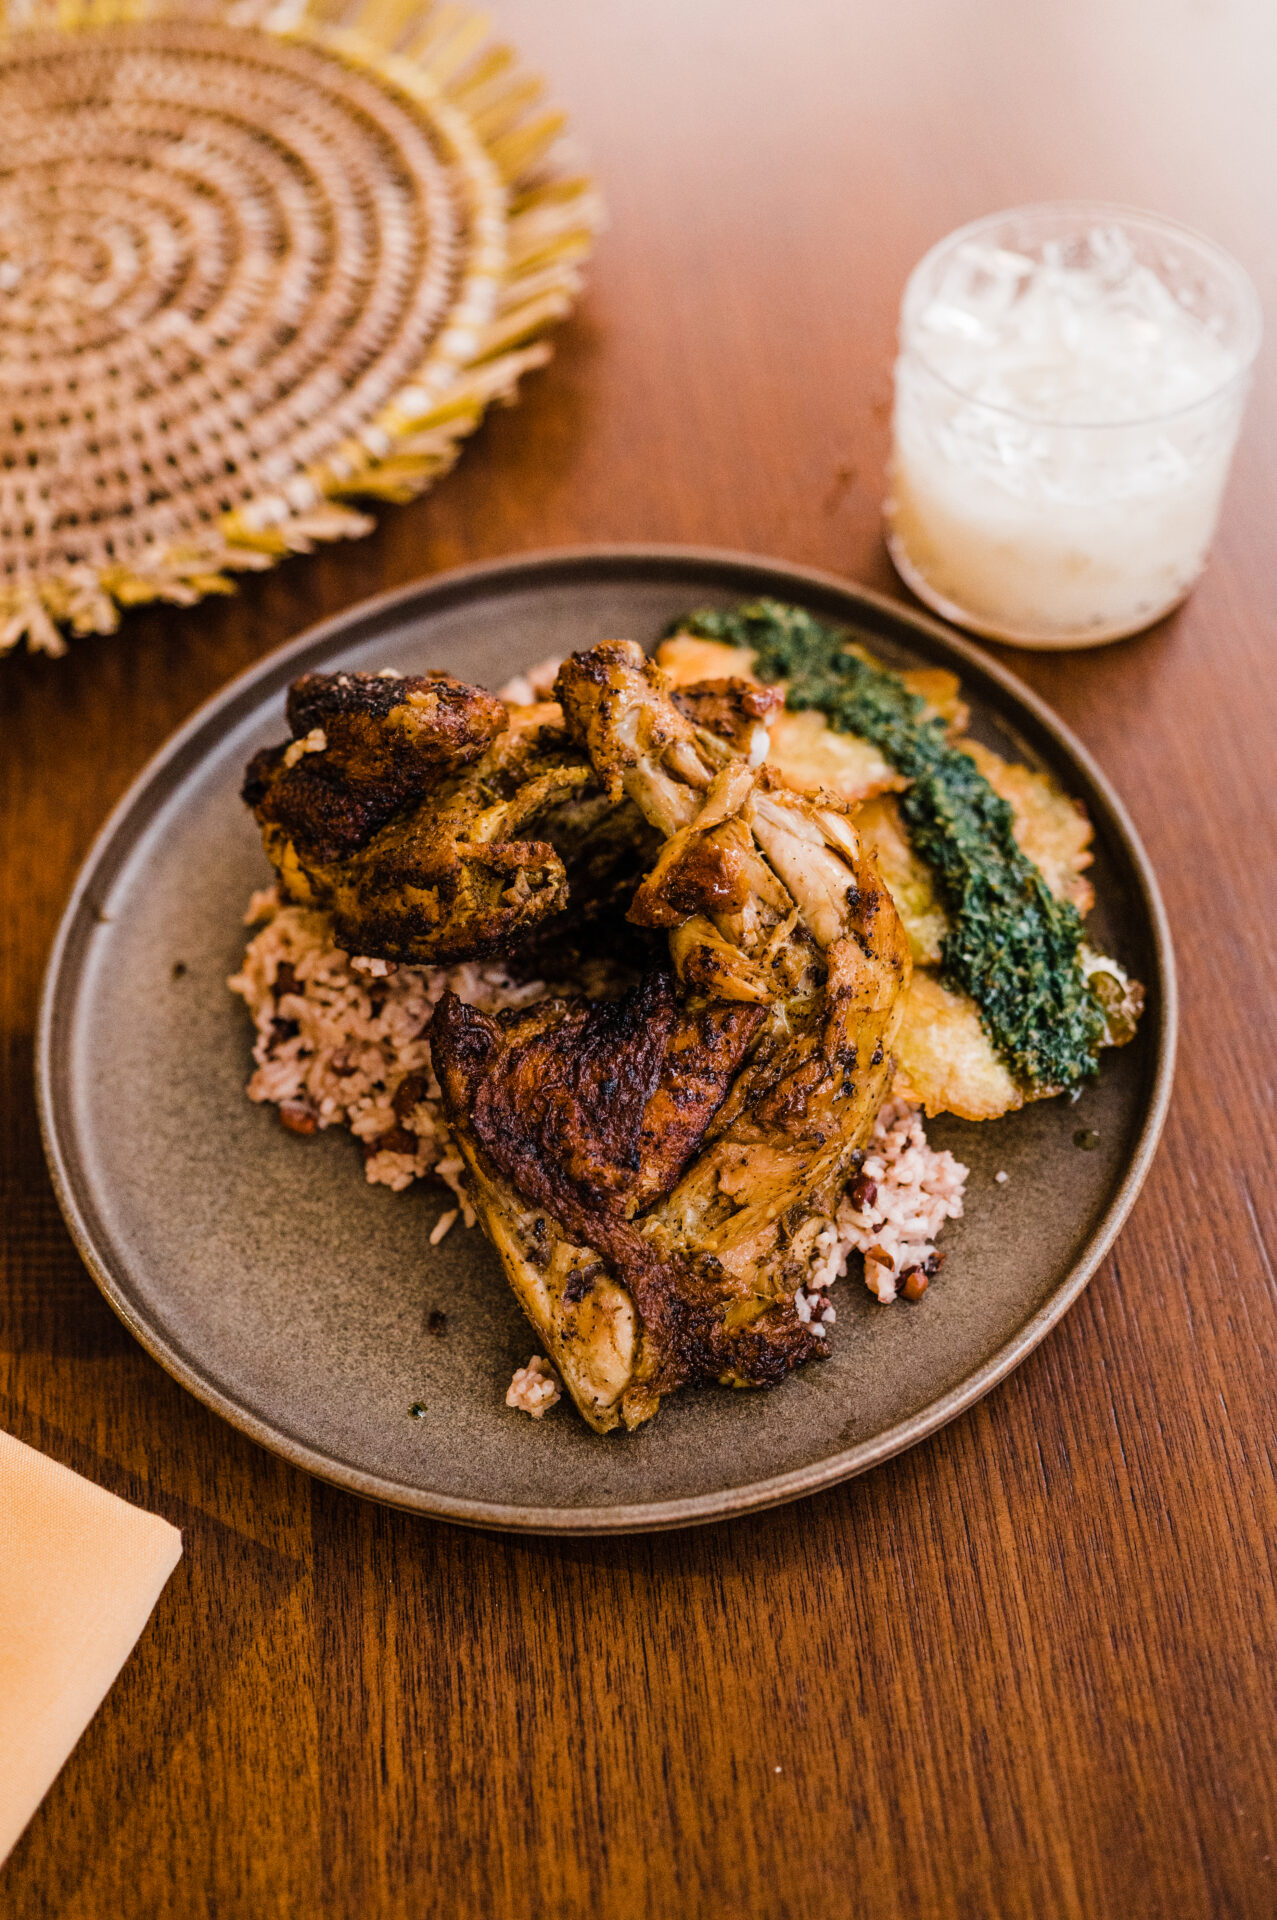 Okan dish of chicken, herbs, and rice by Bernard Bennett